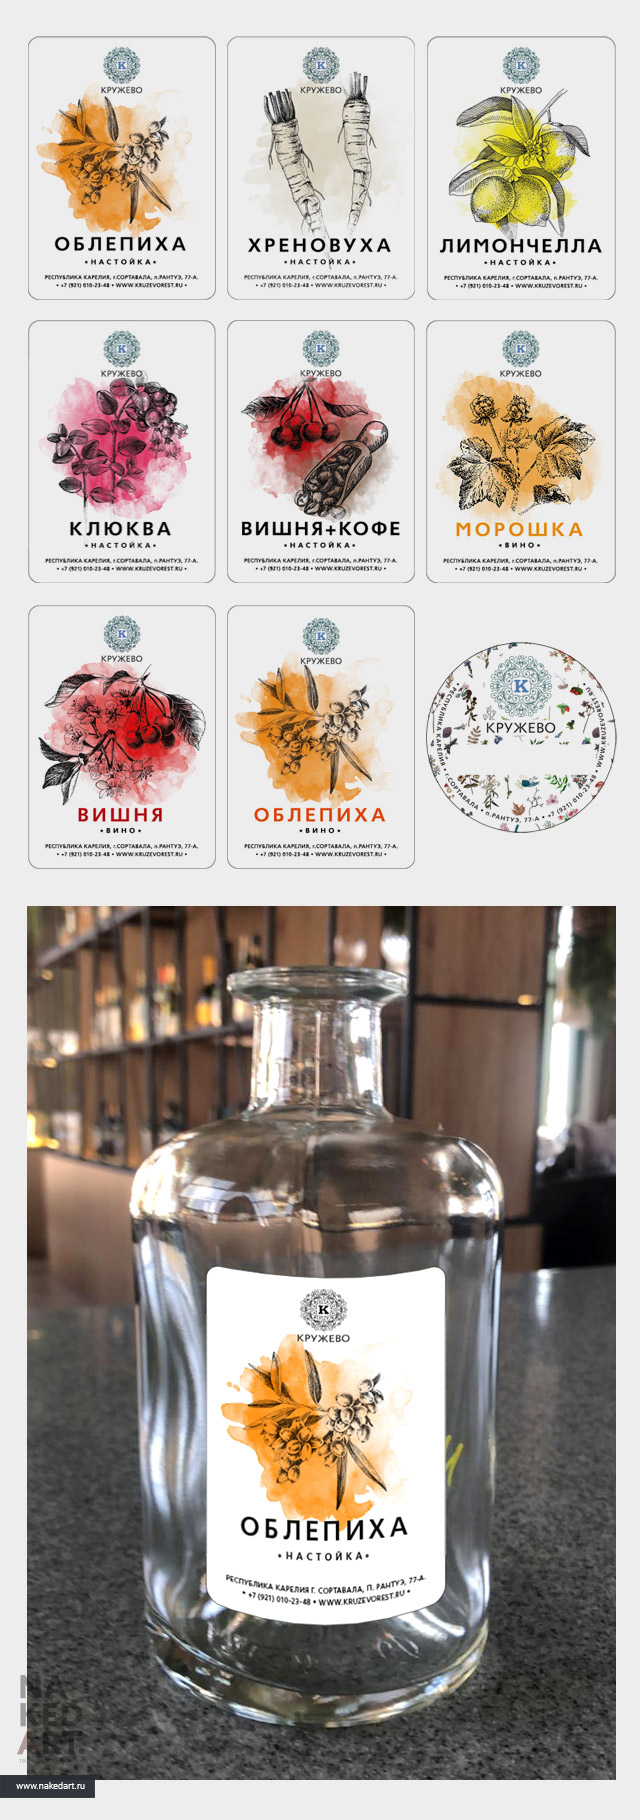 Дизайн этикеток напитков ресторана «Кружево» пример